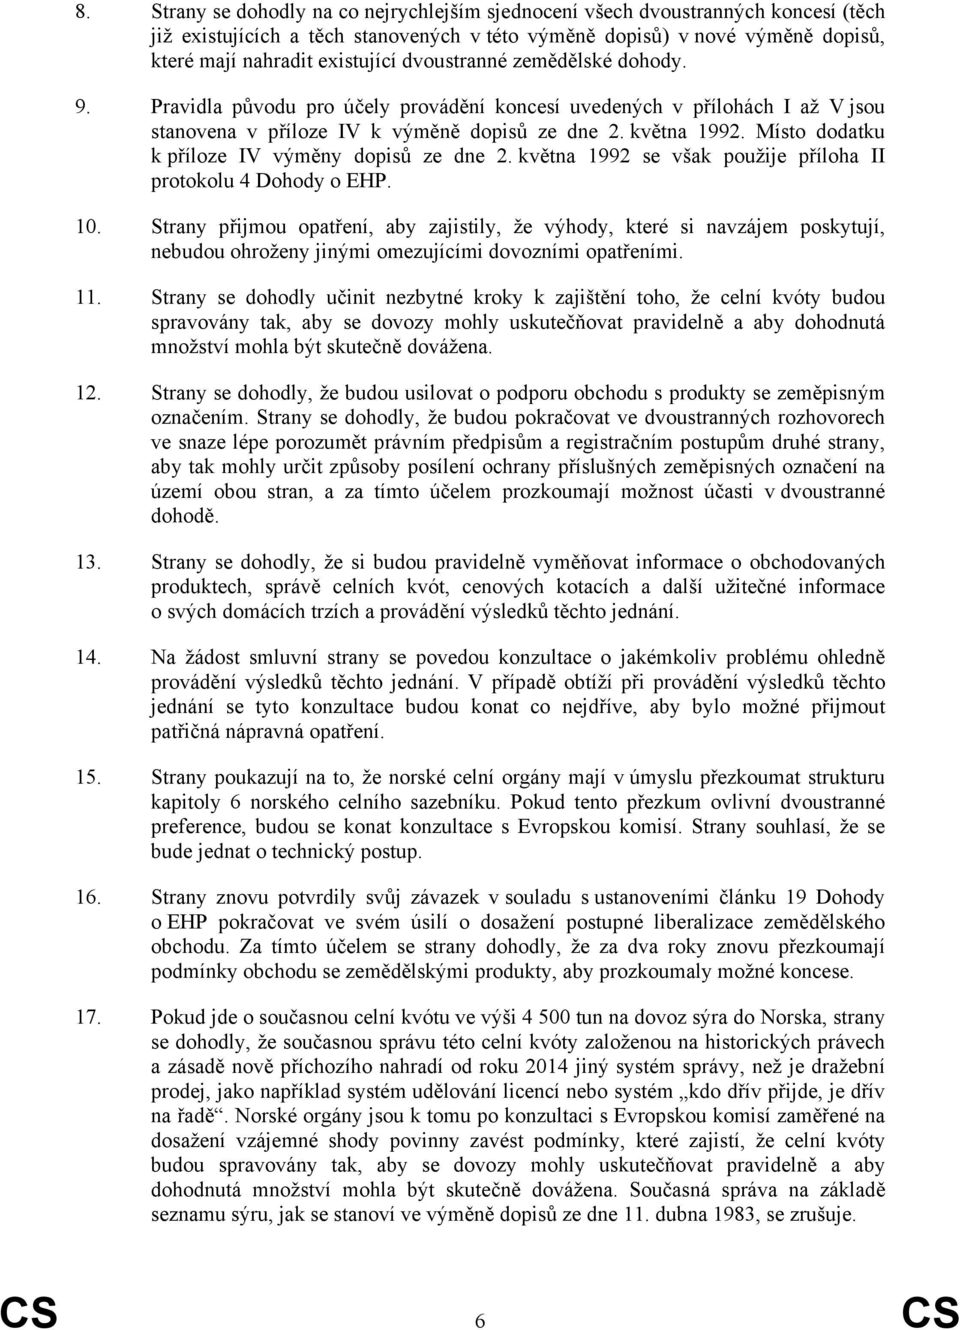 Místo dodatku k příloze IV výměny dopisů ze dne 2. května 1992 se však použije příloha II protokolu 4 Dohody o EHP. 10.